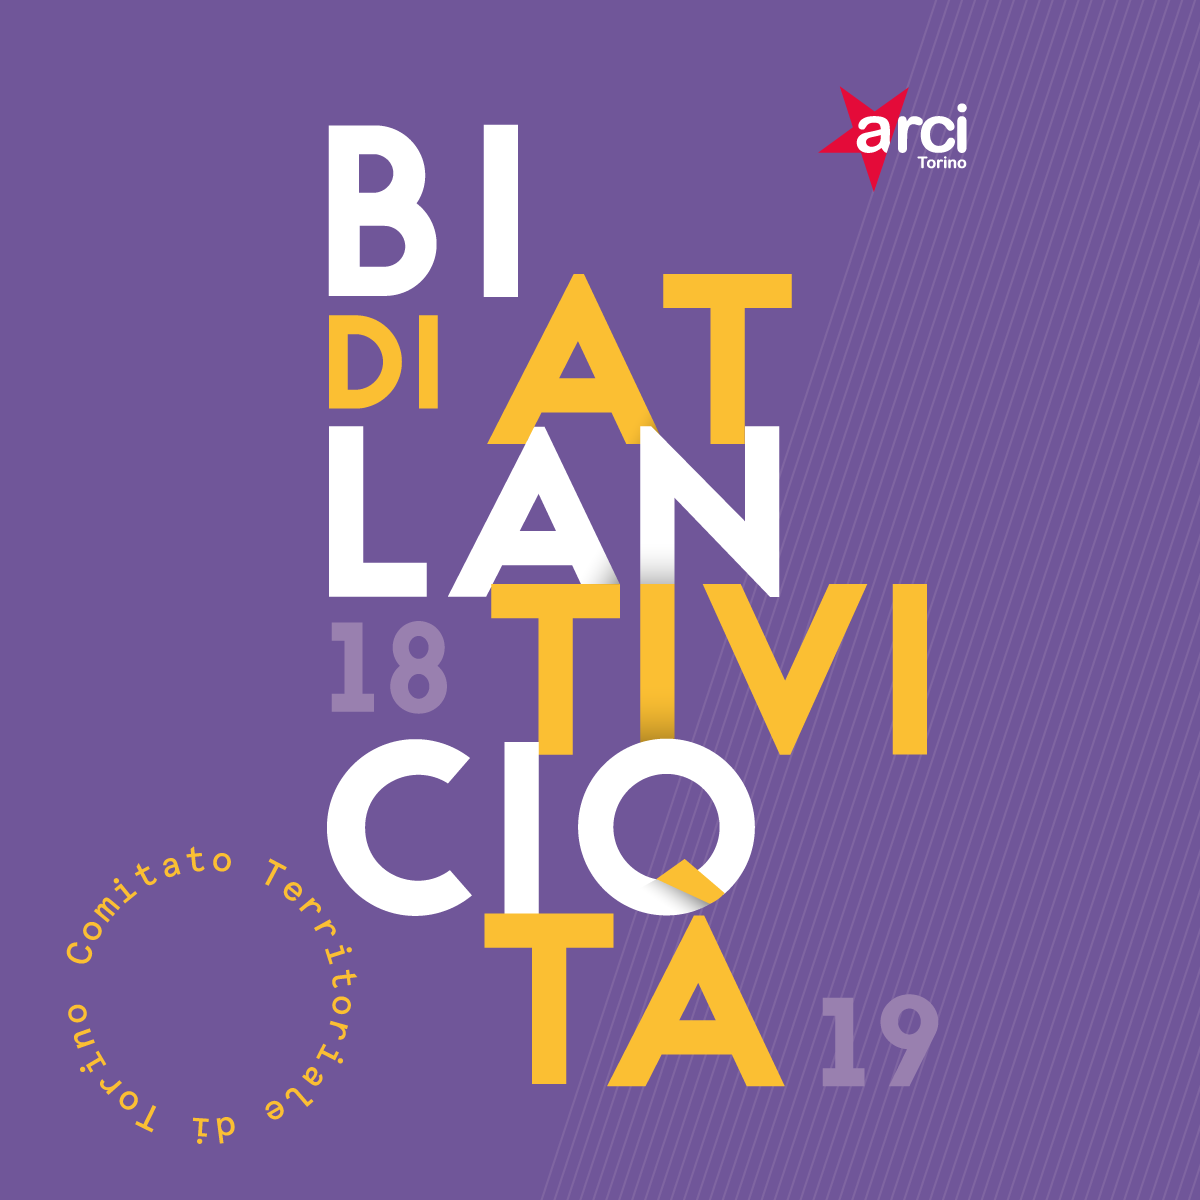 Bilancio di Attività 2018/2019 - Scarica tutti i dati, i progetti e gli eventi dell'Arci di Torino.